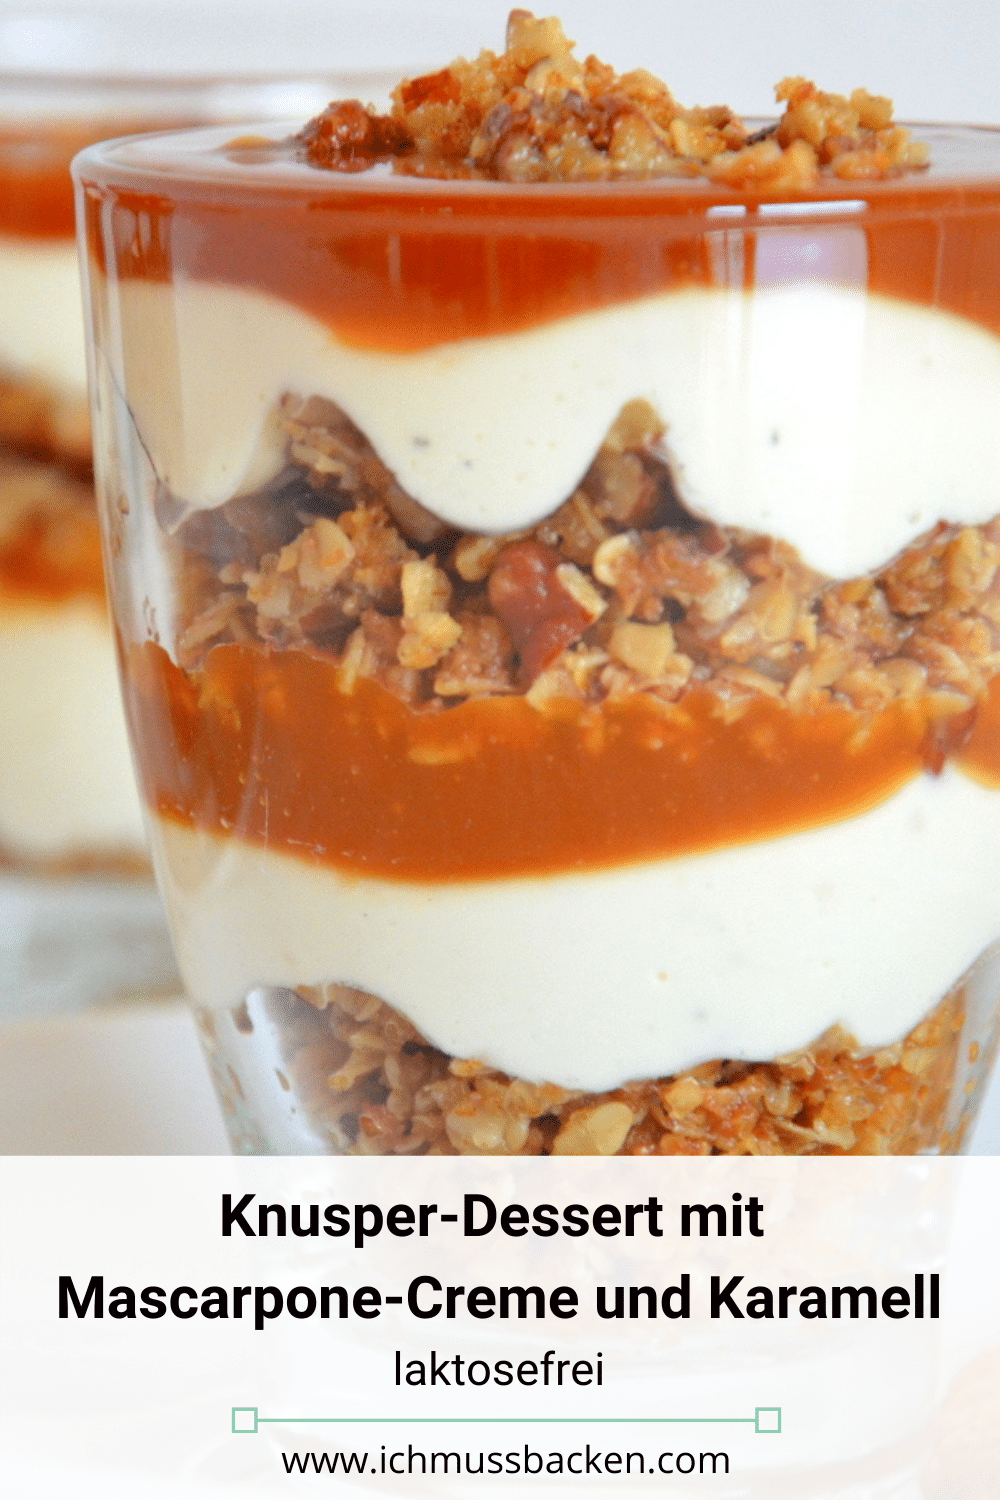 Knusper-Dessert mit Mascarpone-Creme und Karamell